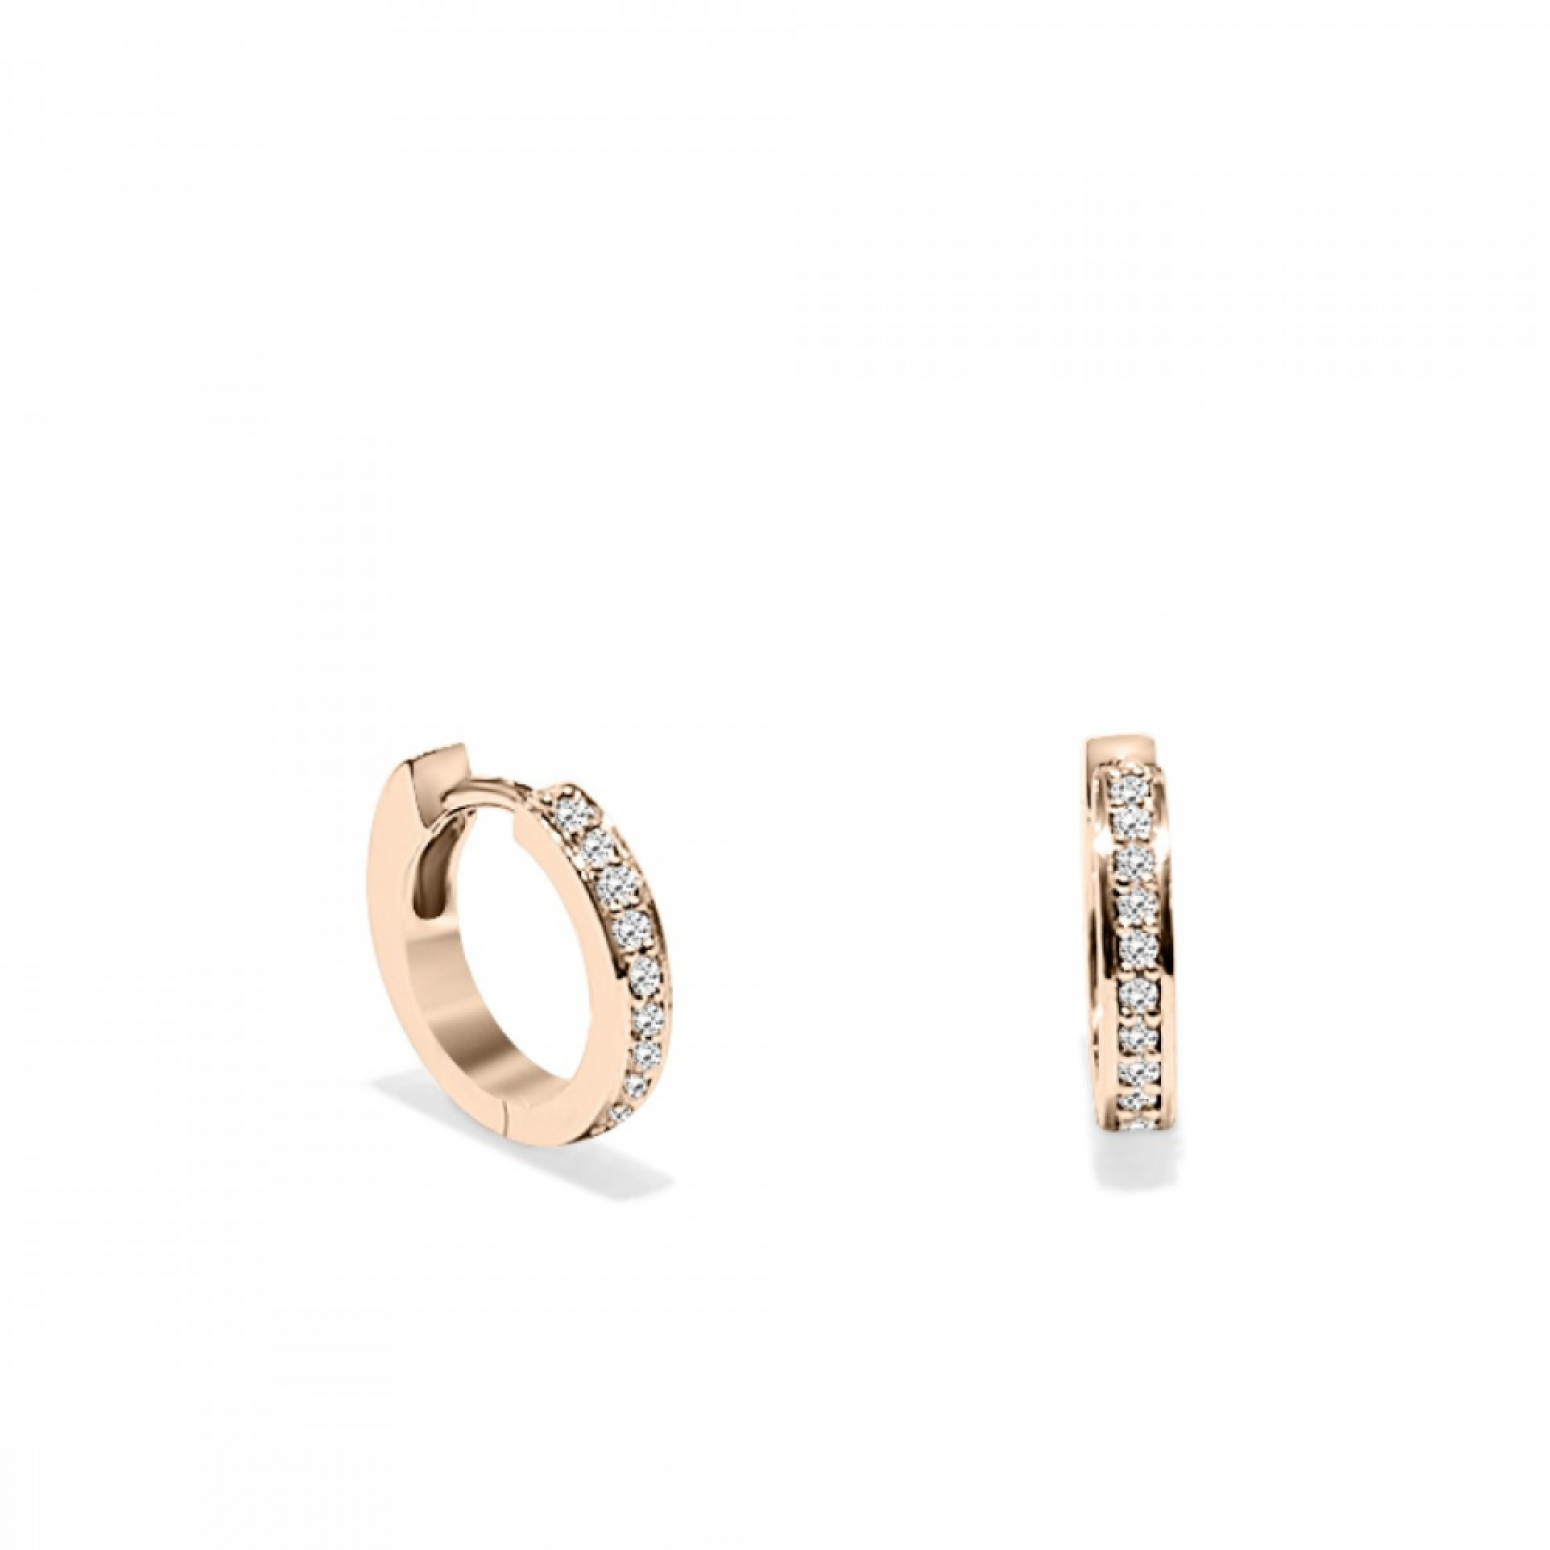 Hoop earrings 18K pink gold with diamonds 0.13ct, VS1, H, sk2975 EARRINGS Κοσμηματα - chrilia.gr